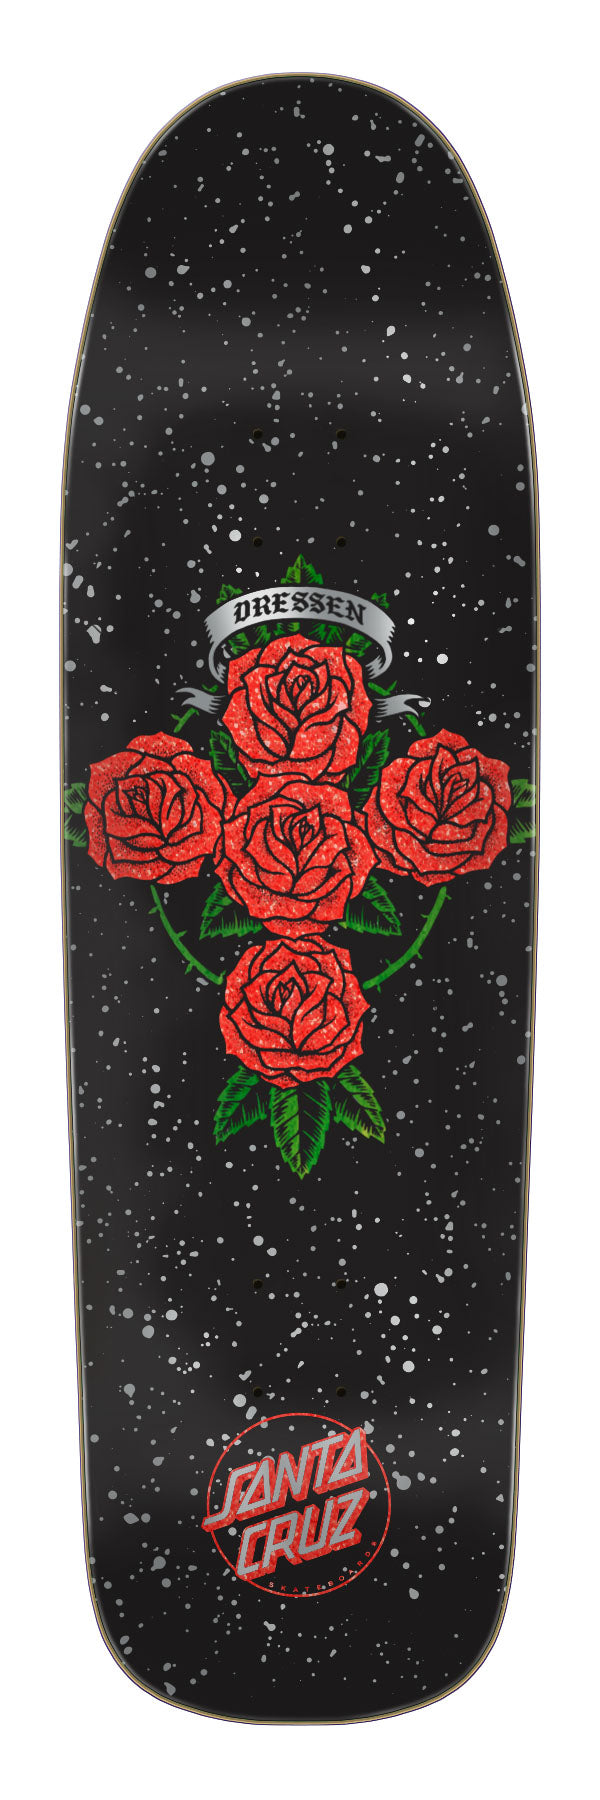 Santa Cruz - Tabla Dressen Rose Cross Shaped 9.31x32.36 - Lo Mejor De Santa Cruz - Solo Por $59990! Compra Ahora En Wallride Skateshop